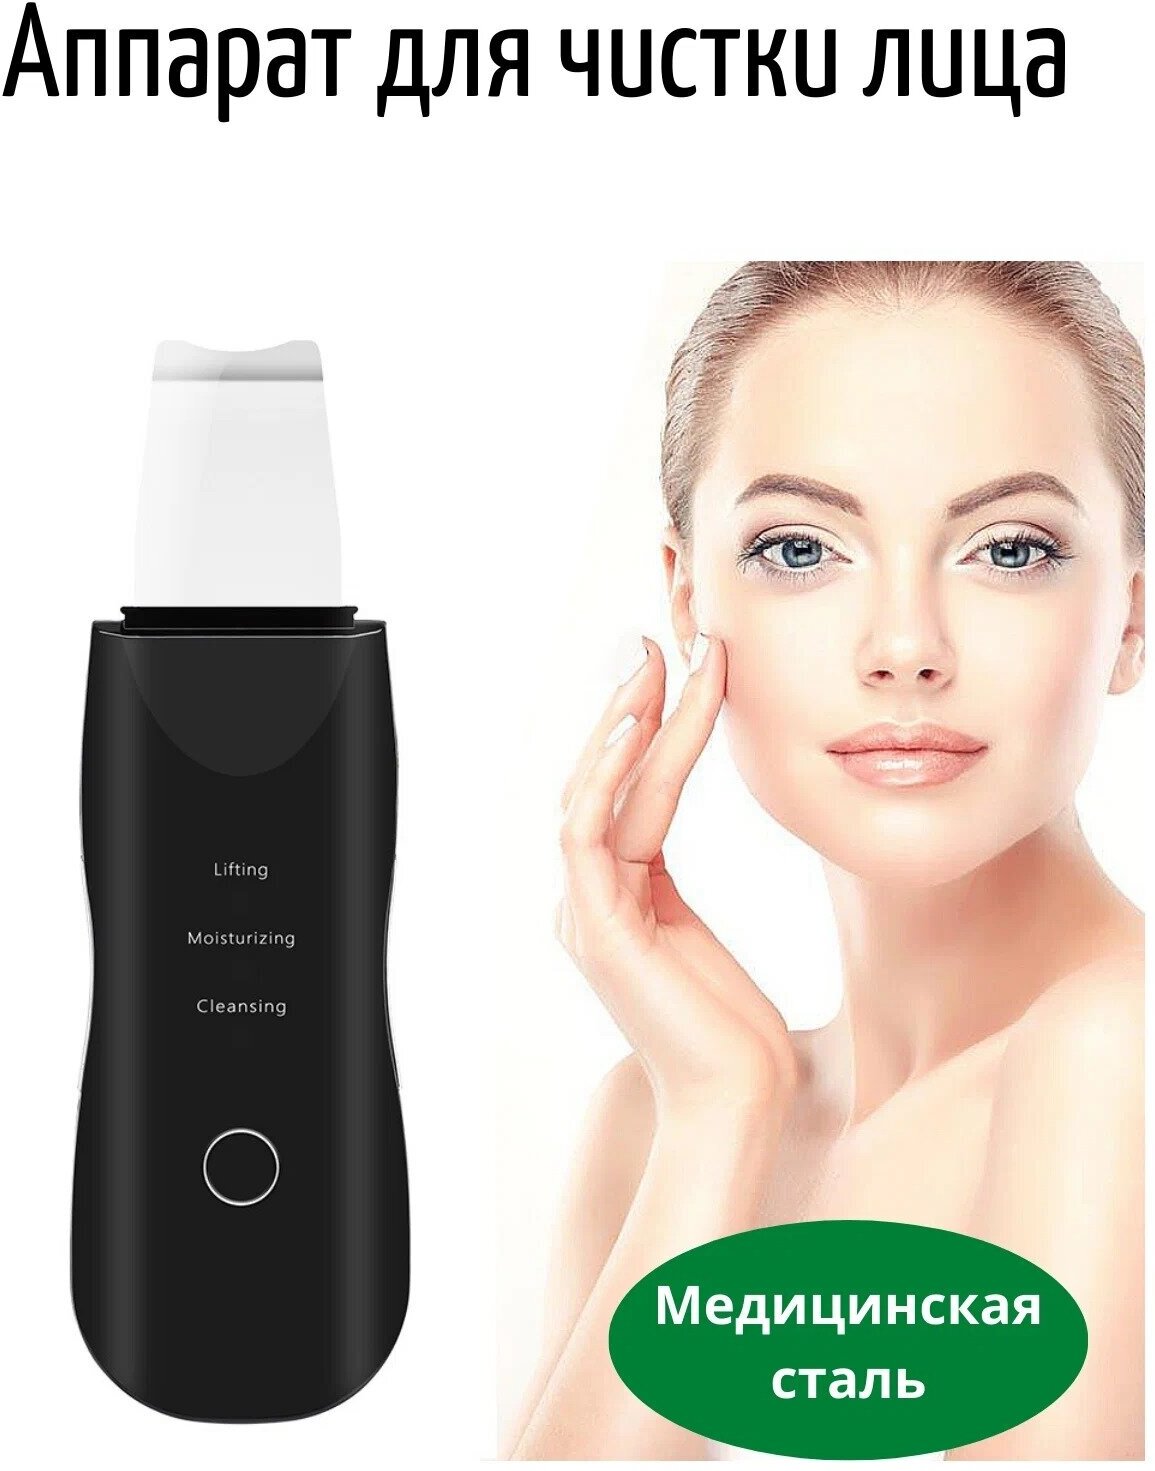 Косметологический аппарат для ультразвуковой чистки лица кожи / Инструмент прибор для очищения сужения пор на лице / Скрабер / Пилинг